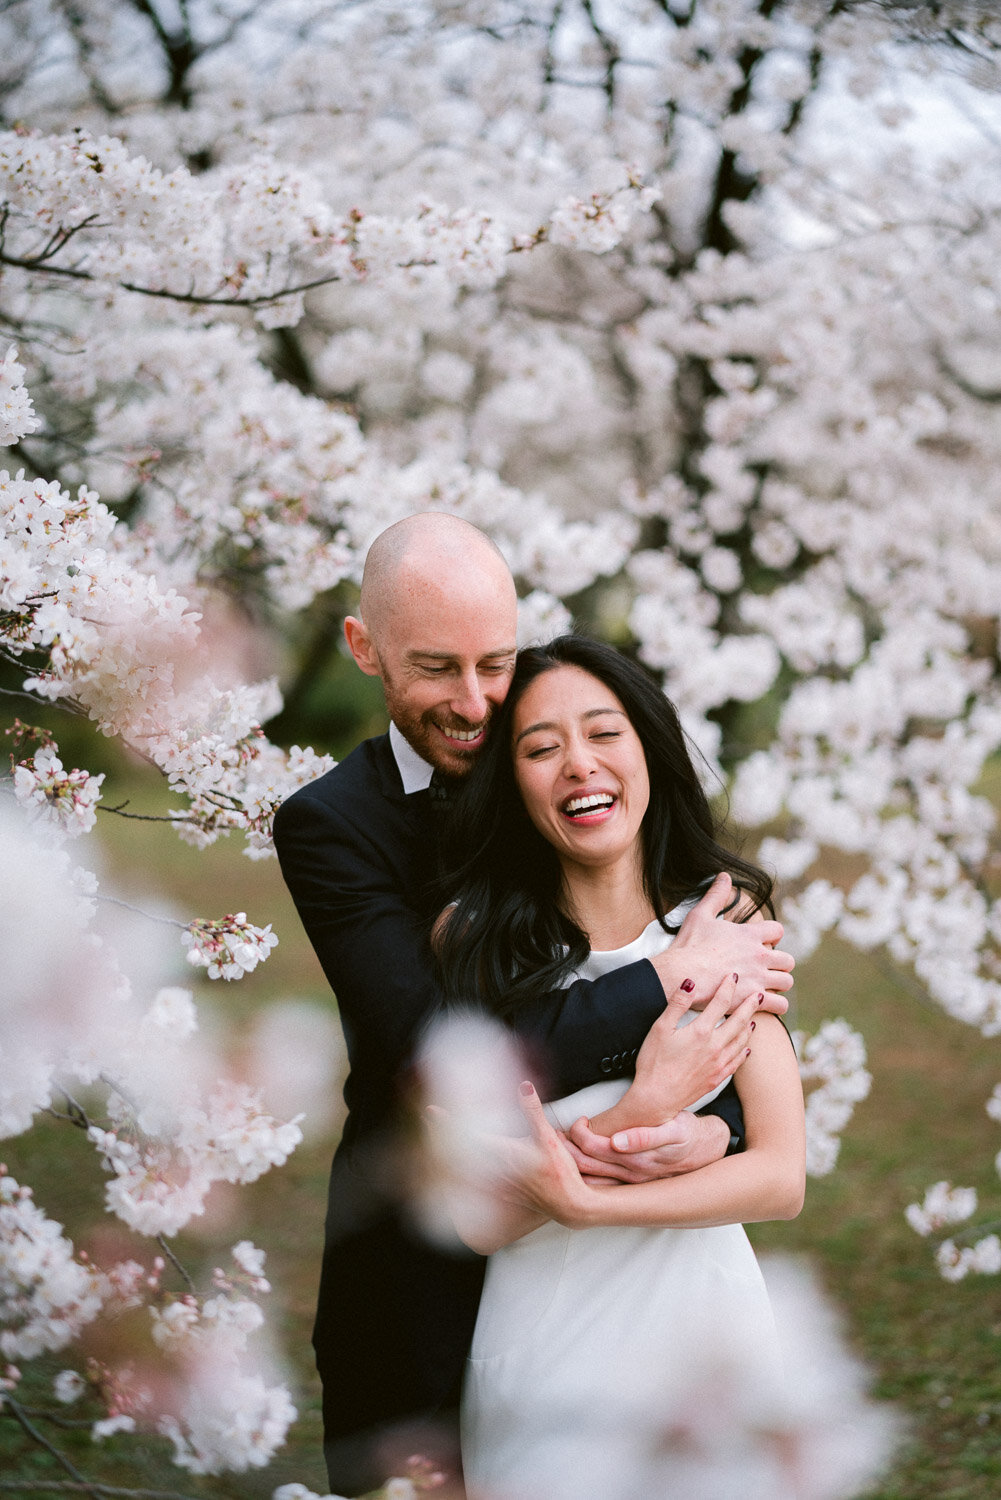 Tokyo Wedding Portrait during Sakura Season, Japan